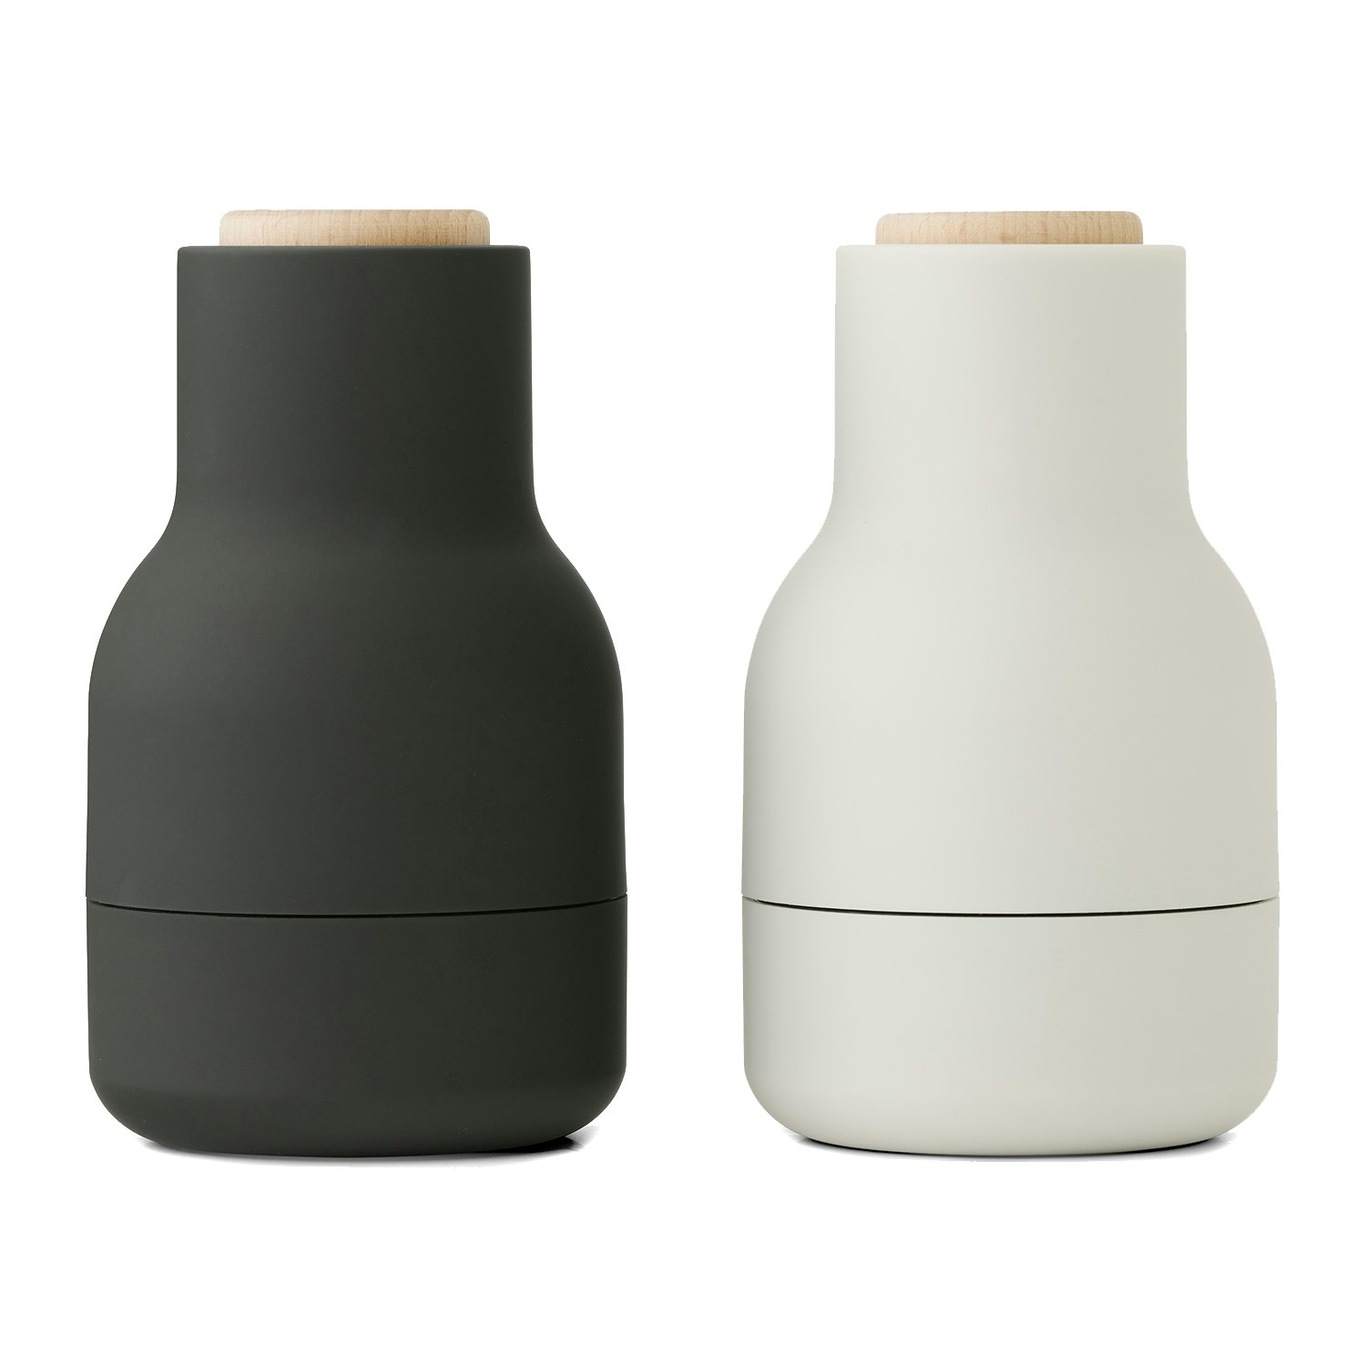 Bottle Grinder Gewürzmühle 11,5 cm 2-er Set, Carbon / Ash